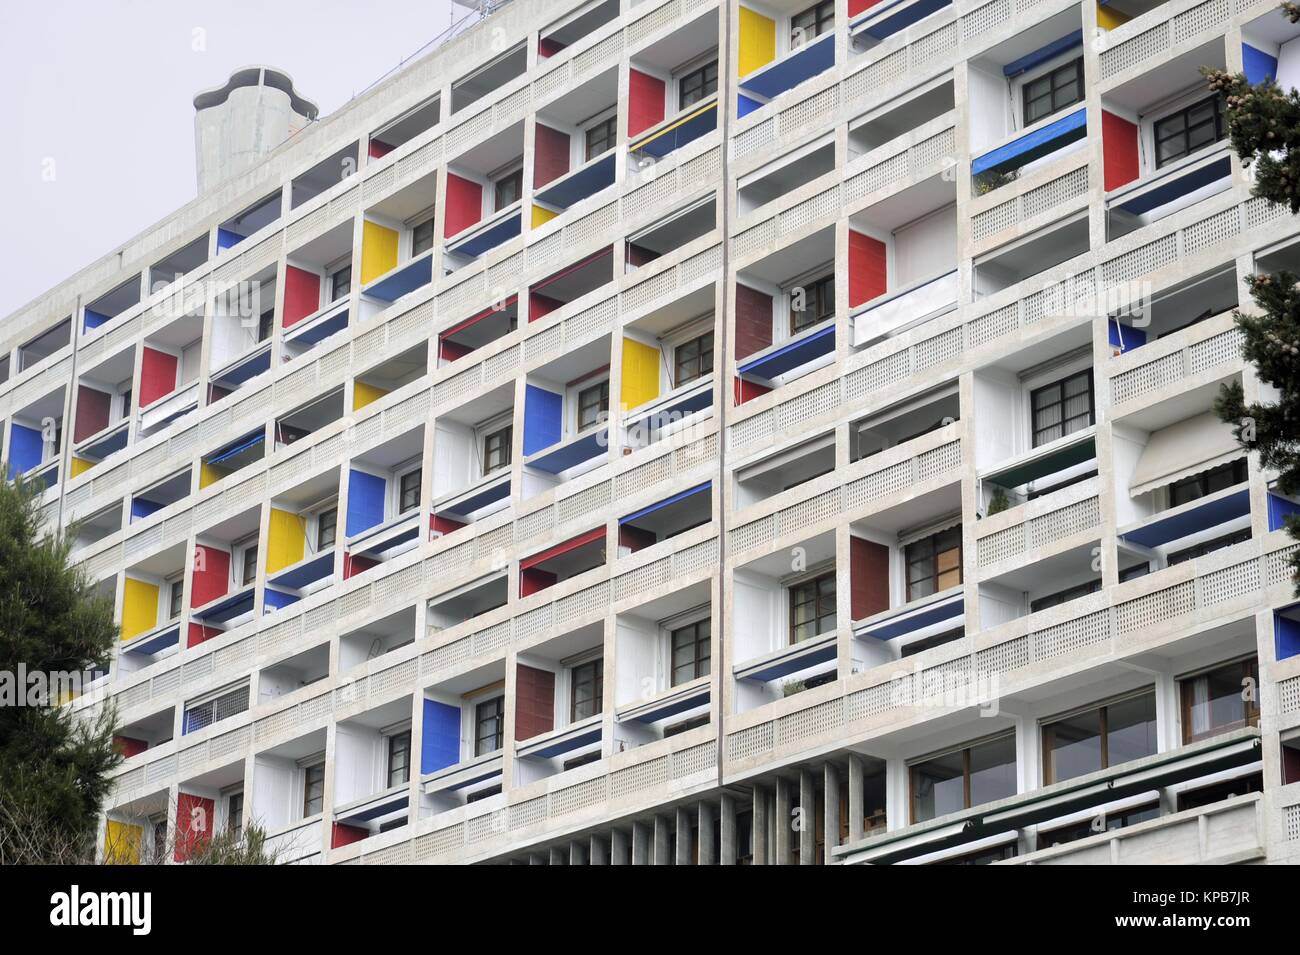 Marseille (France), l'habitation du logement social connu sous le nom de "La Cité Radieuse", conçu par le grand architecte Le Corbusier Banque D'Images